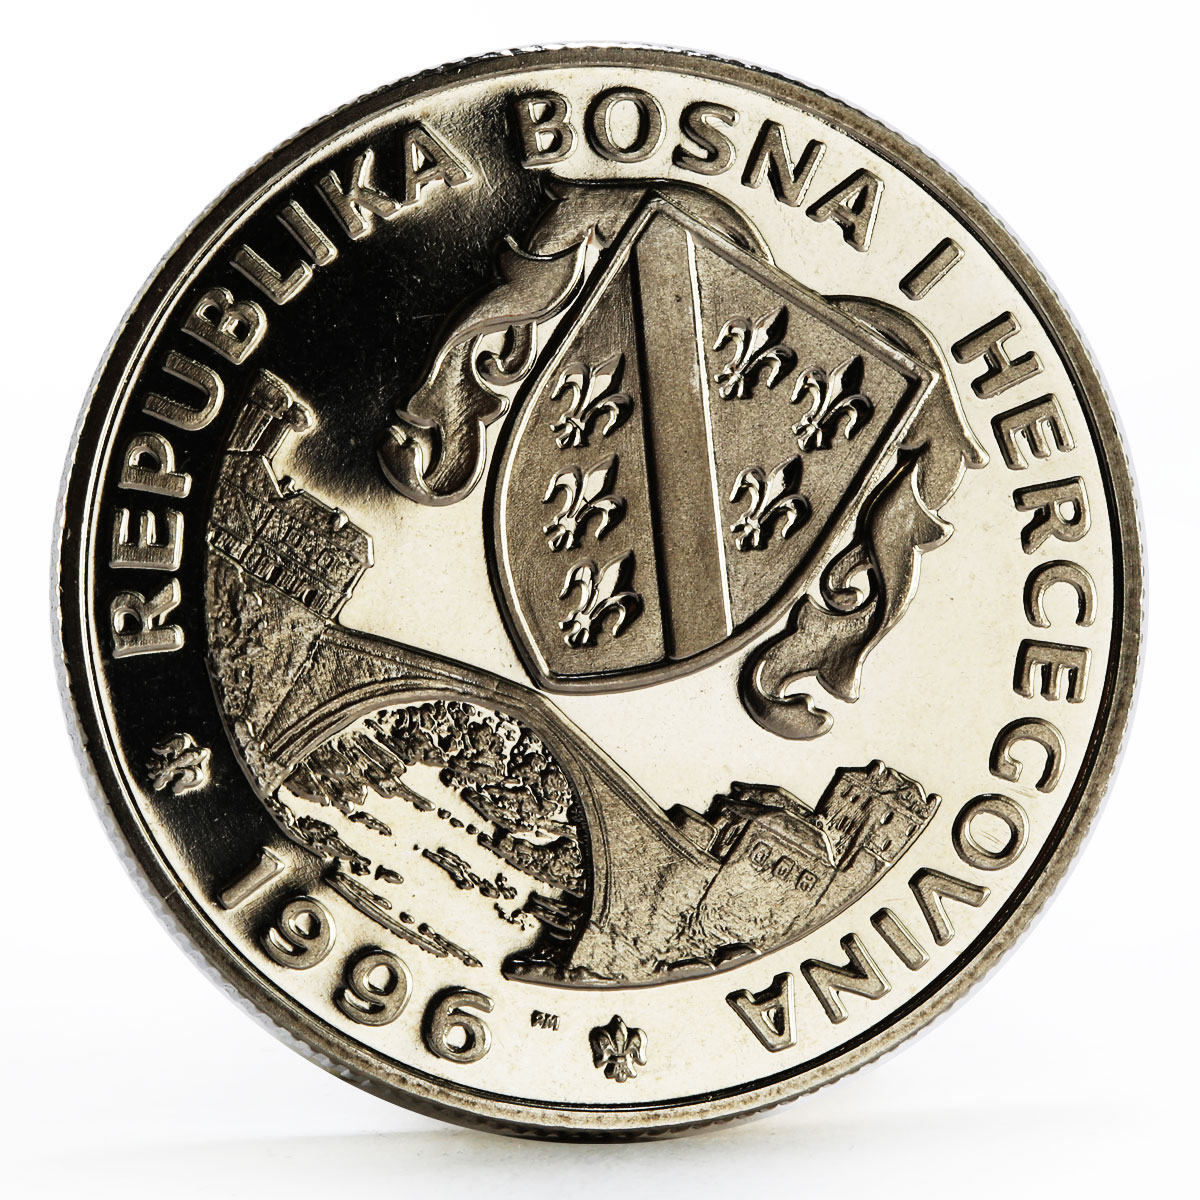 Bosnia and Herzegovina 500 dinara Atlanta Olympics Fencers nickel coin 1996